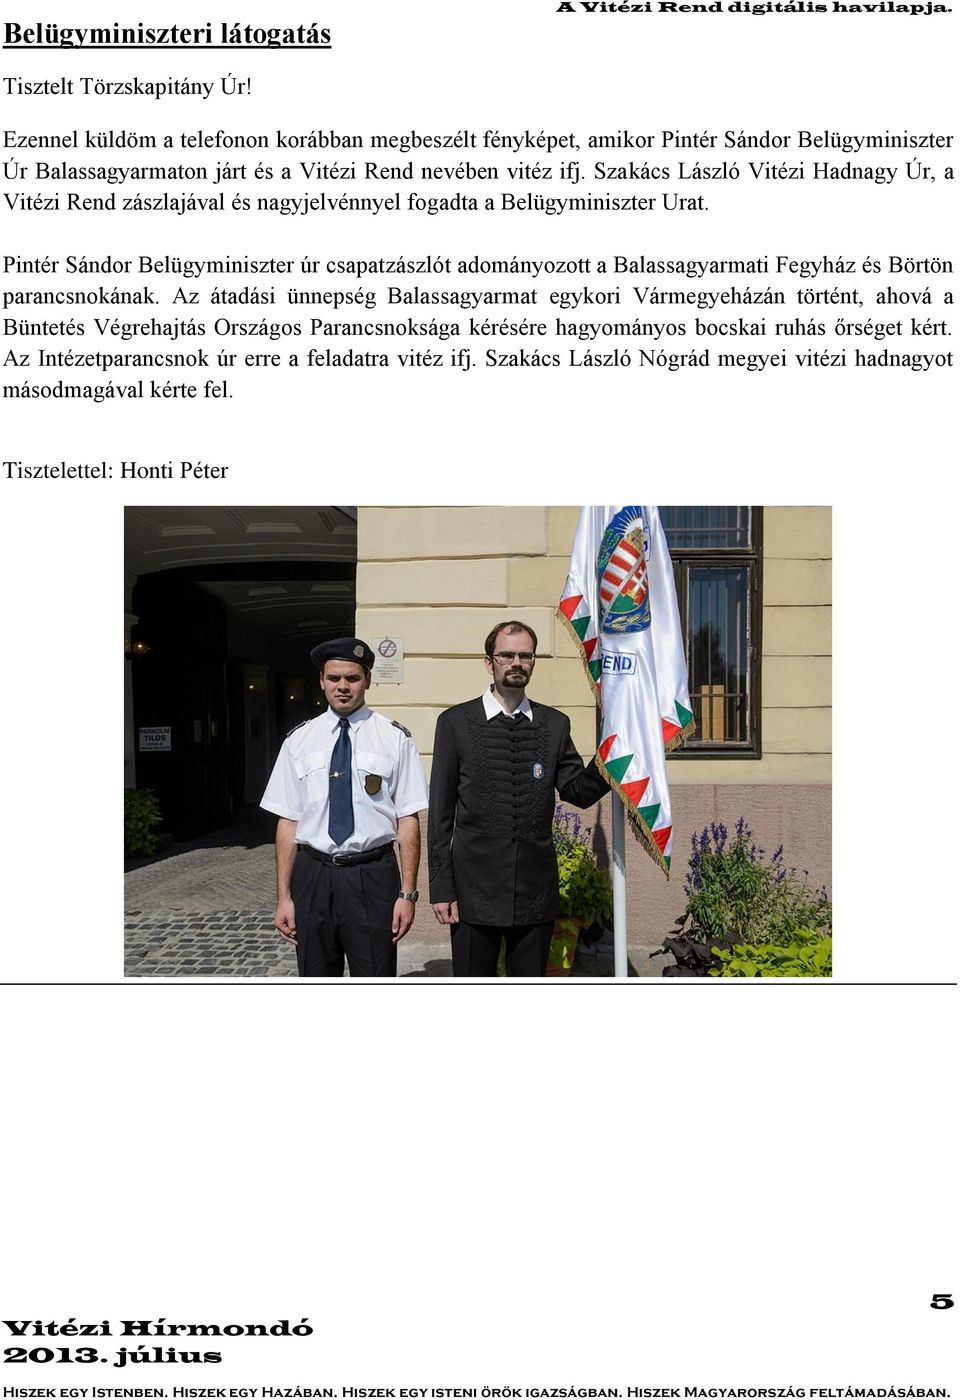 Szakács László Vitézi Hadnagy Úr, a Vitézi Rend zászlajával és nagyjelvénnyel fogadta a Belügyminiszter Urat.